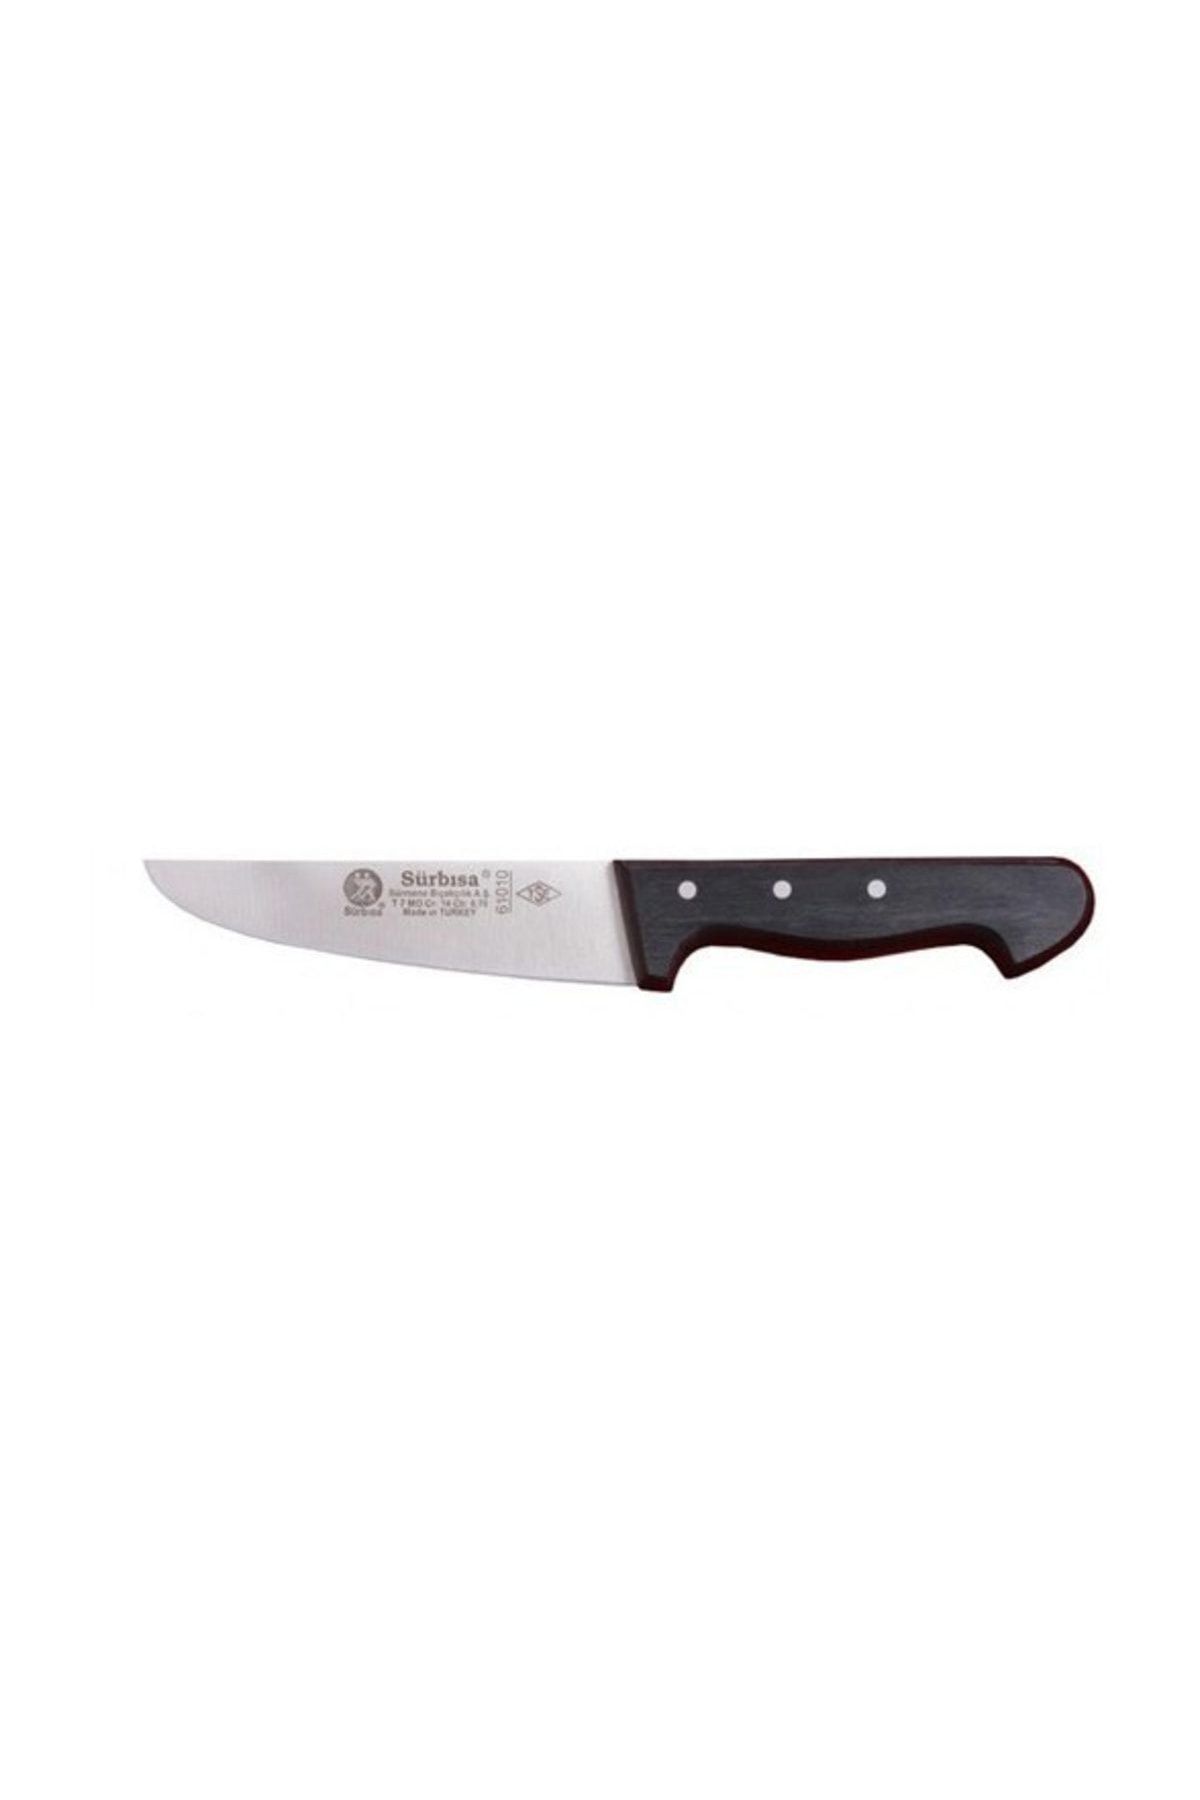 Sürbisa 61010 Mutfak Bıçağı